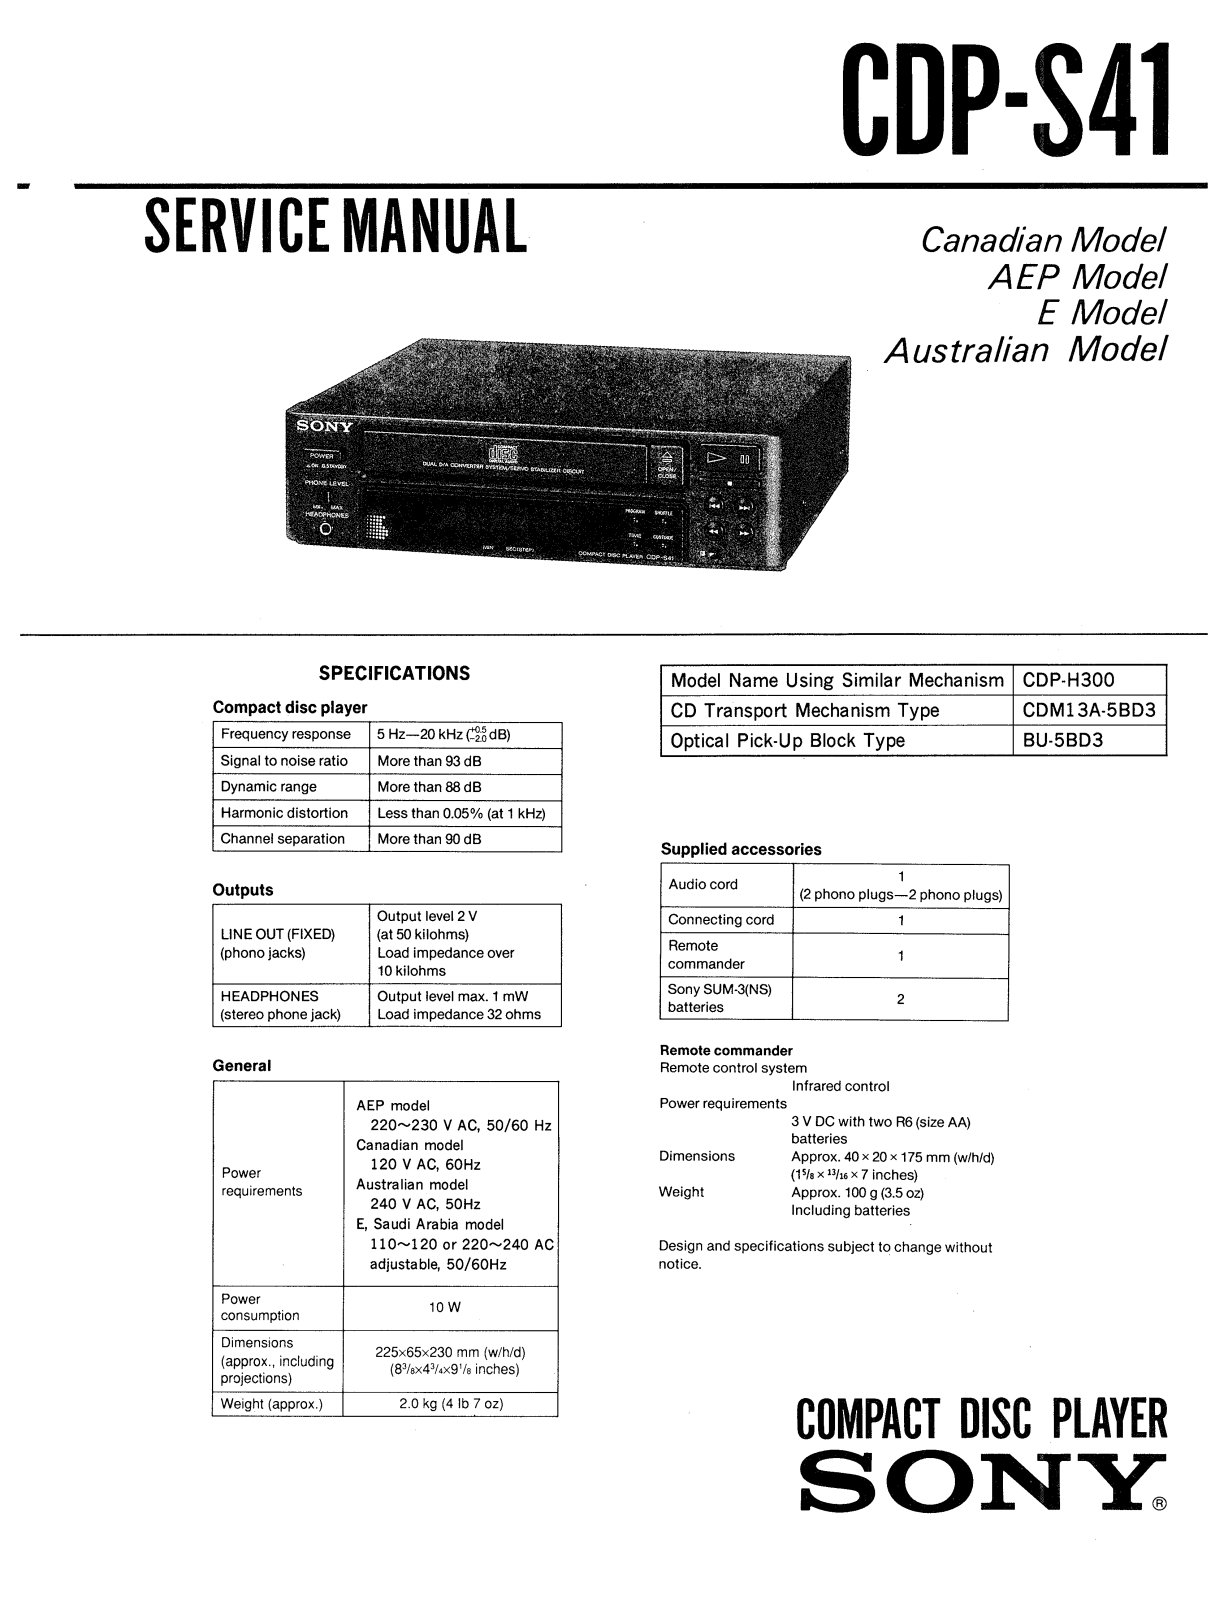 Sony CDPS-41 Service manual